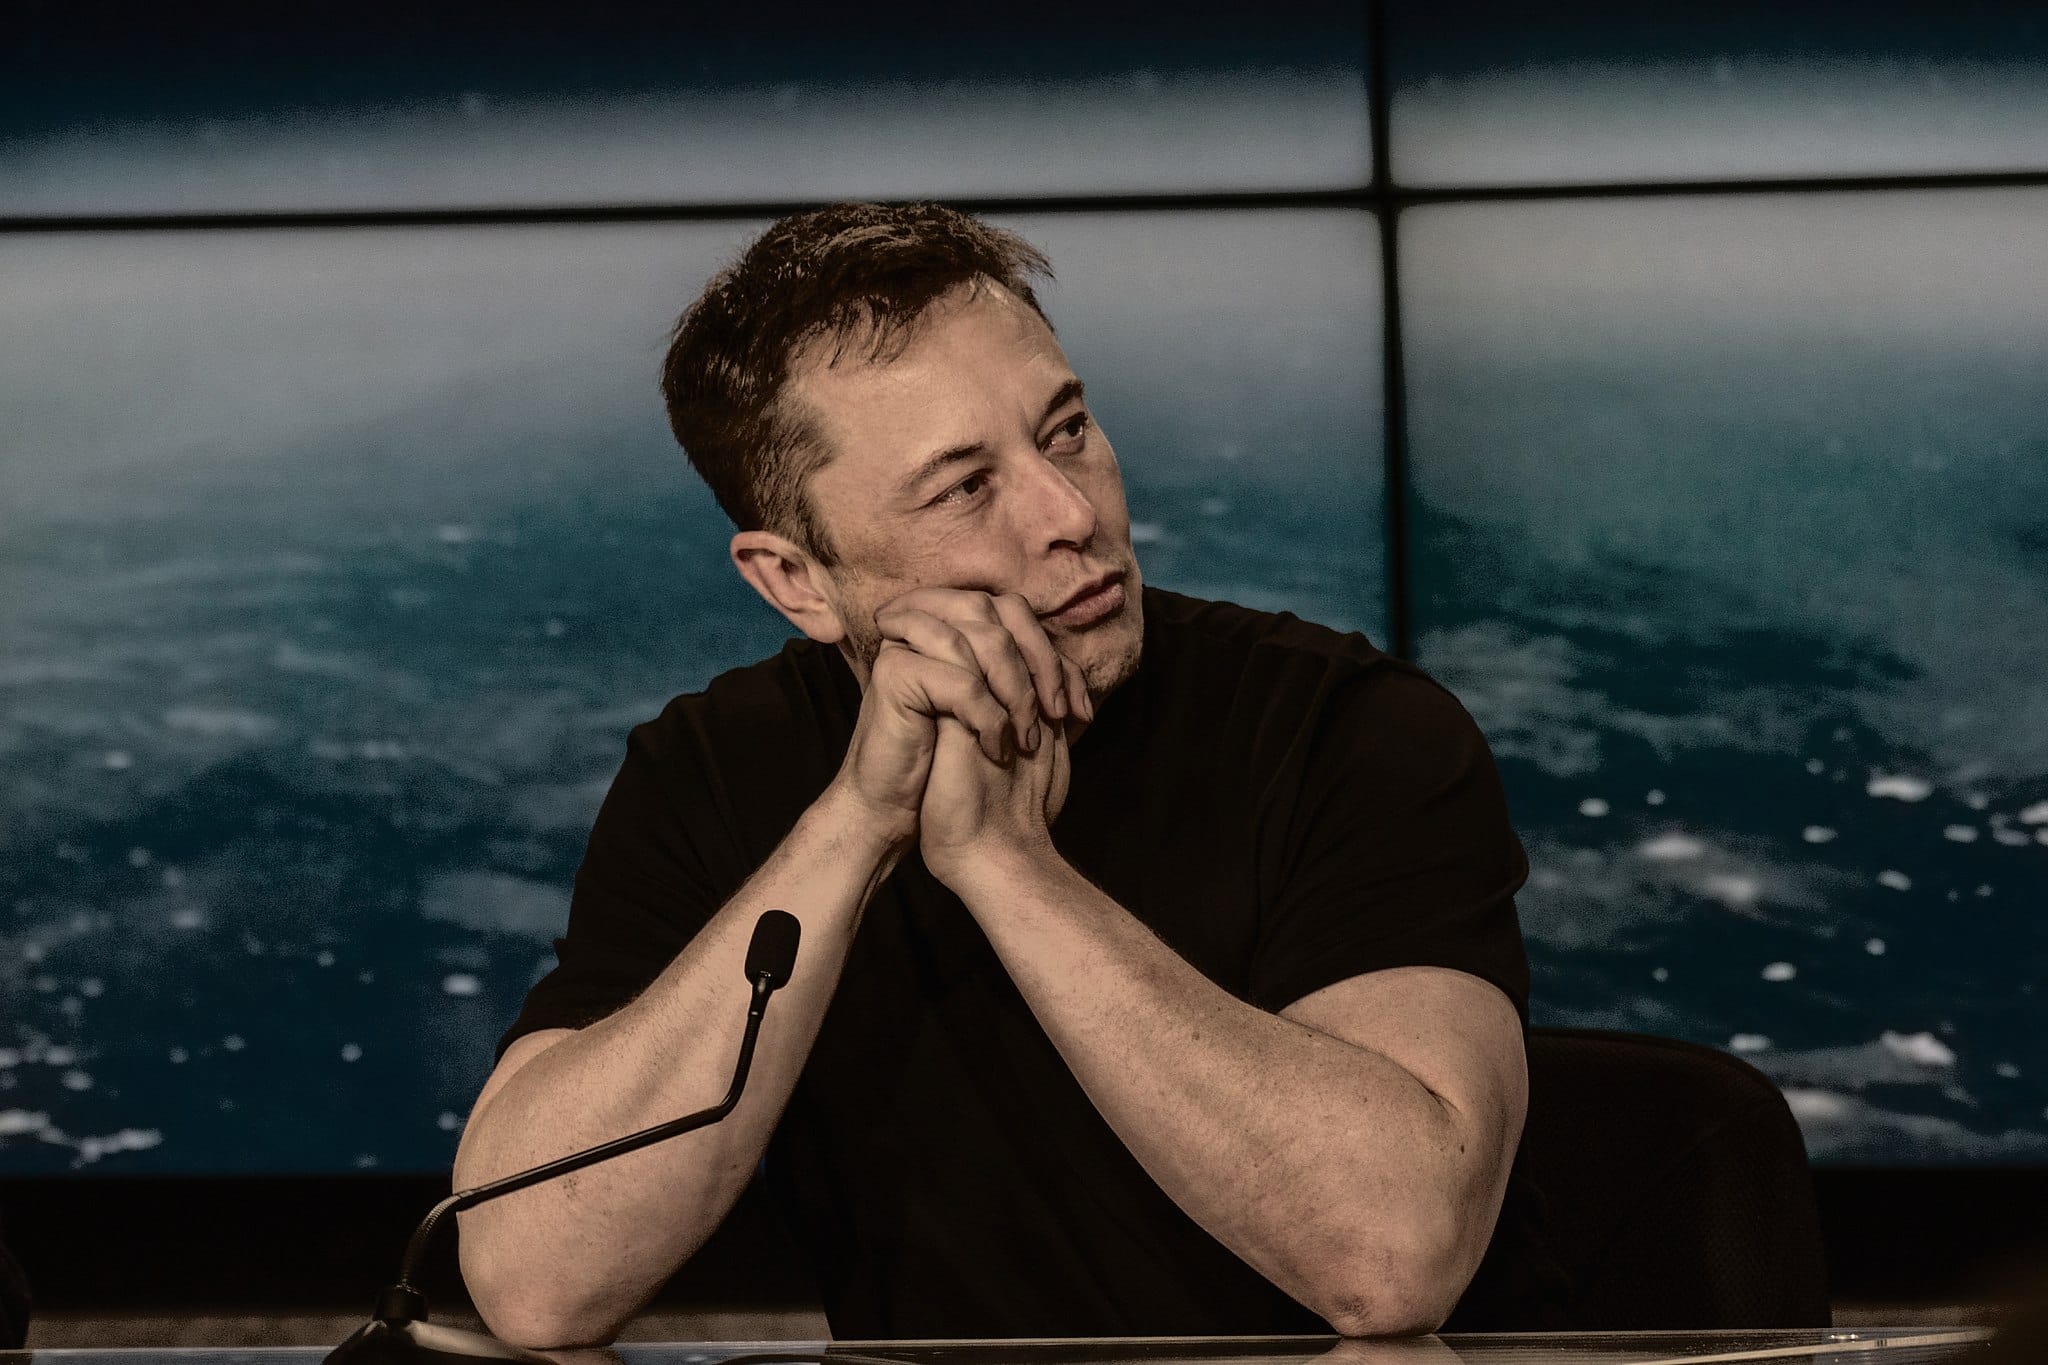 Elon Musk kauft Twitter